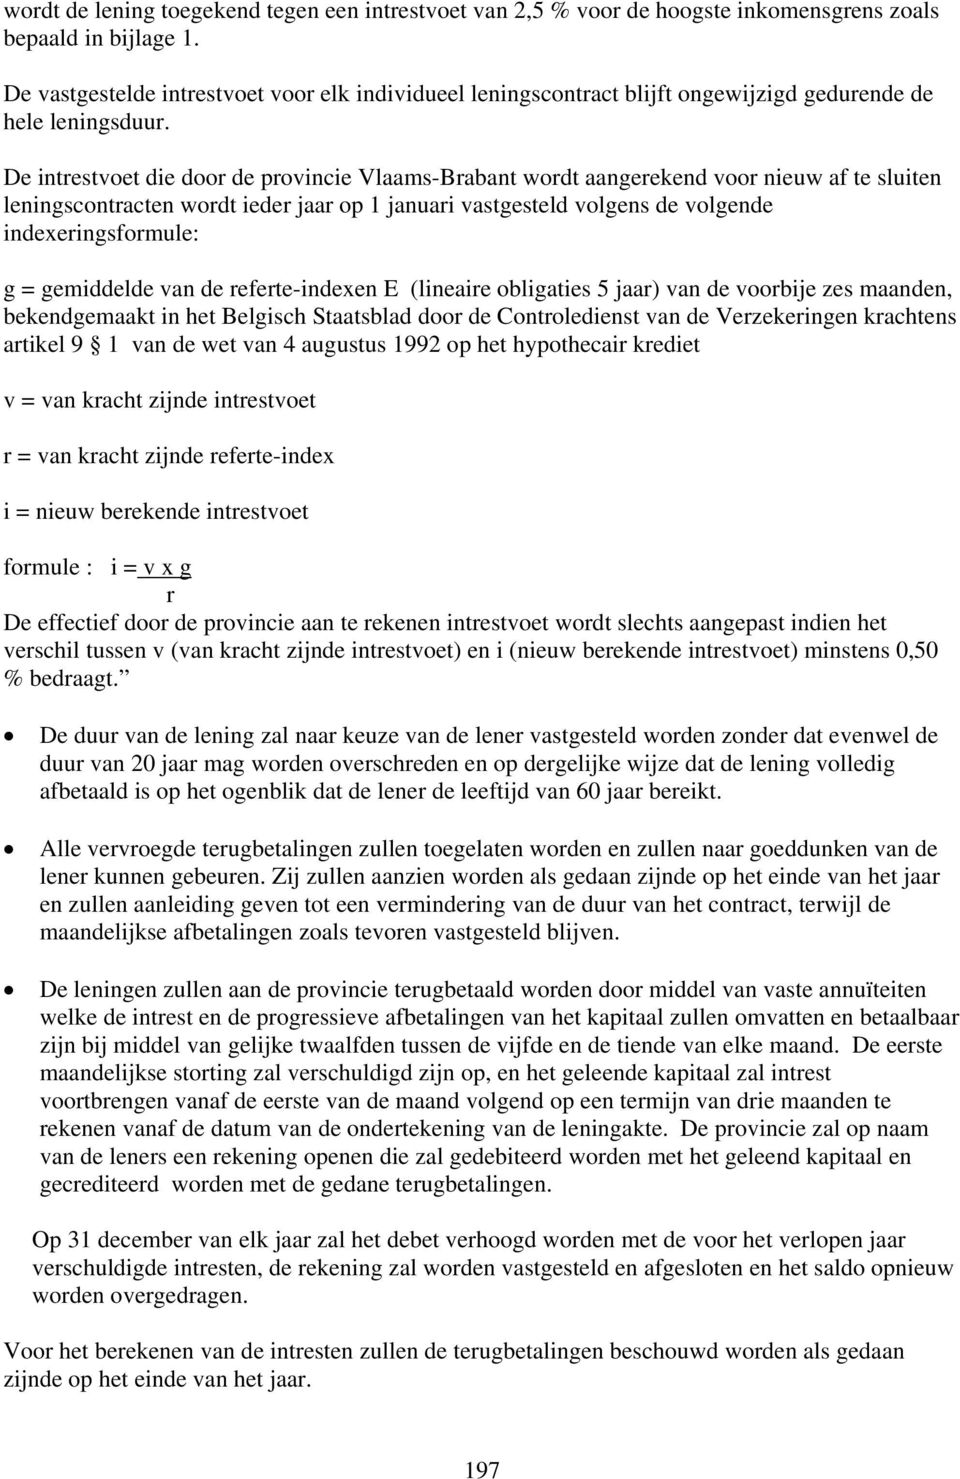 De intrestvoet die door de provincie Vlaams-Brabant wordt aangerekend voor nieuw af te sluiten leningscontracten wordt ieder jaar op 1 januari vastgesteld volgens de volgende indexeringsformule: g =